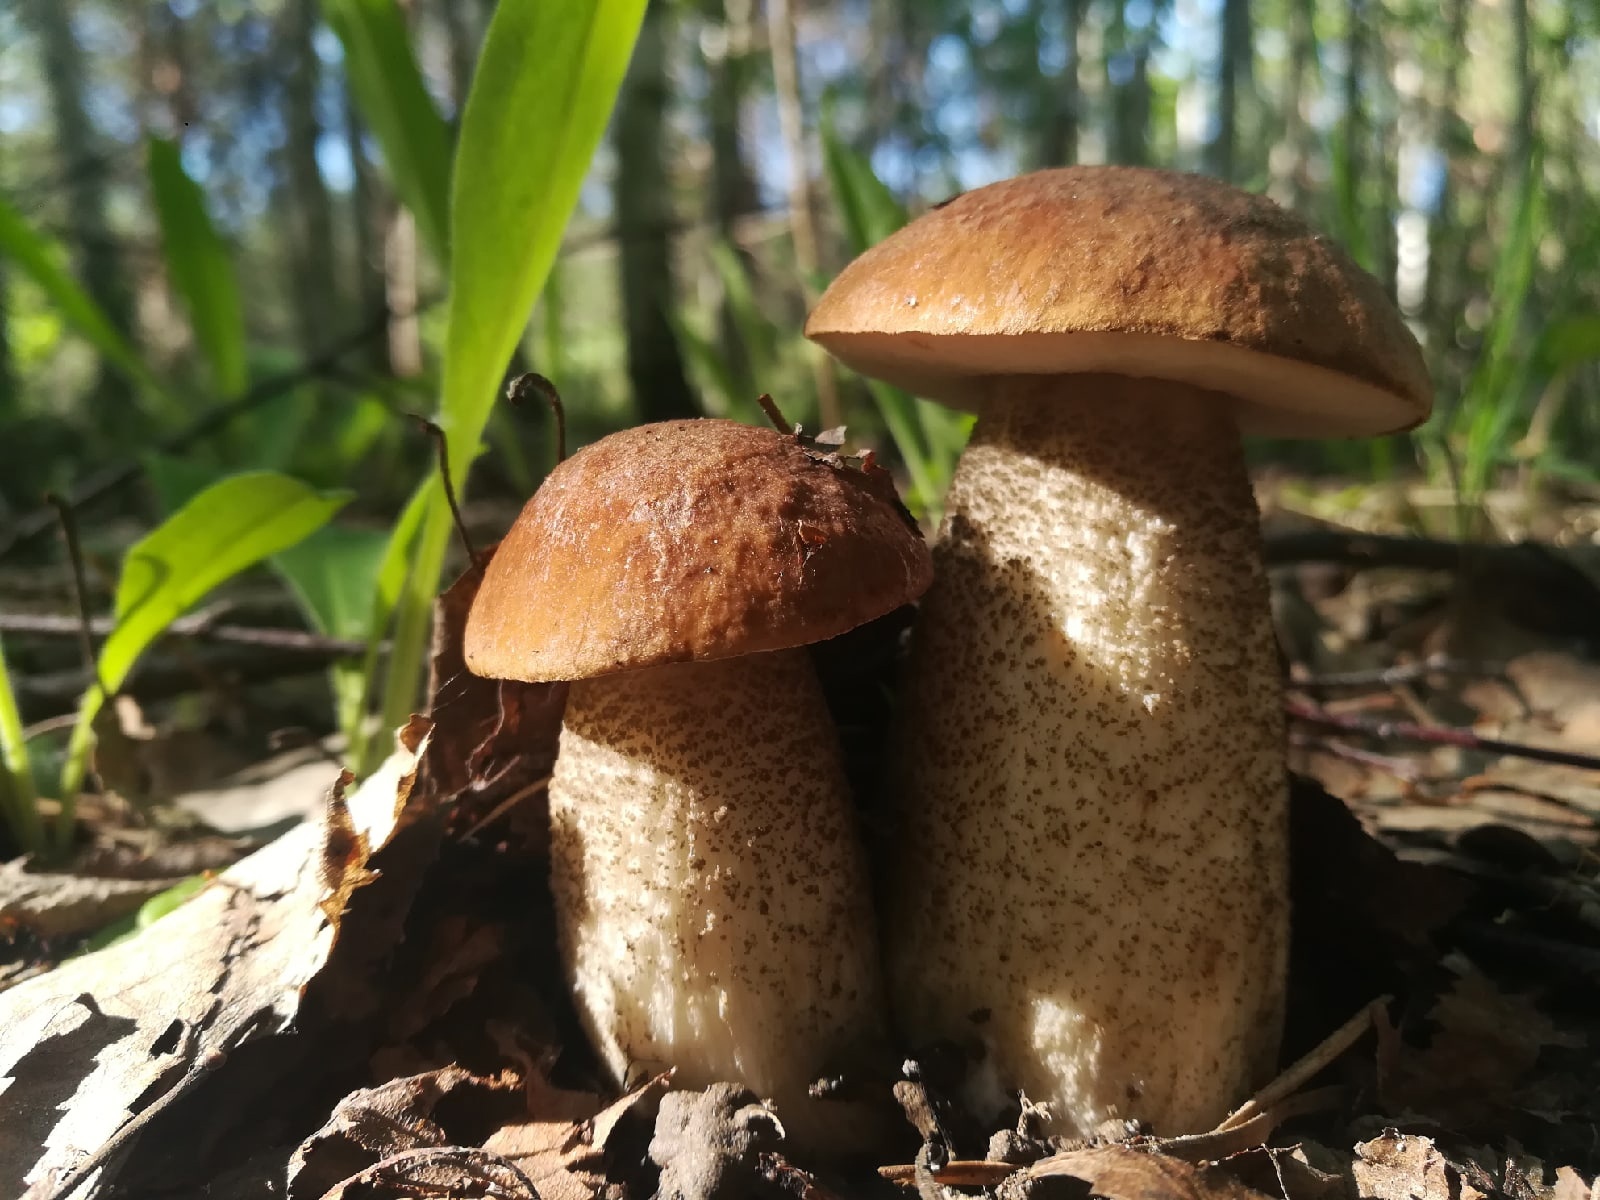 По словам Данияра, большинство грибов в этом году хорошего качества: крепкие, плотные, много маленьких грибочков. Посмотрите, какой кадр, он даже будто передает аромат леса